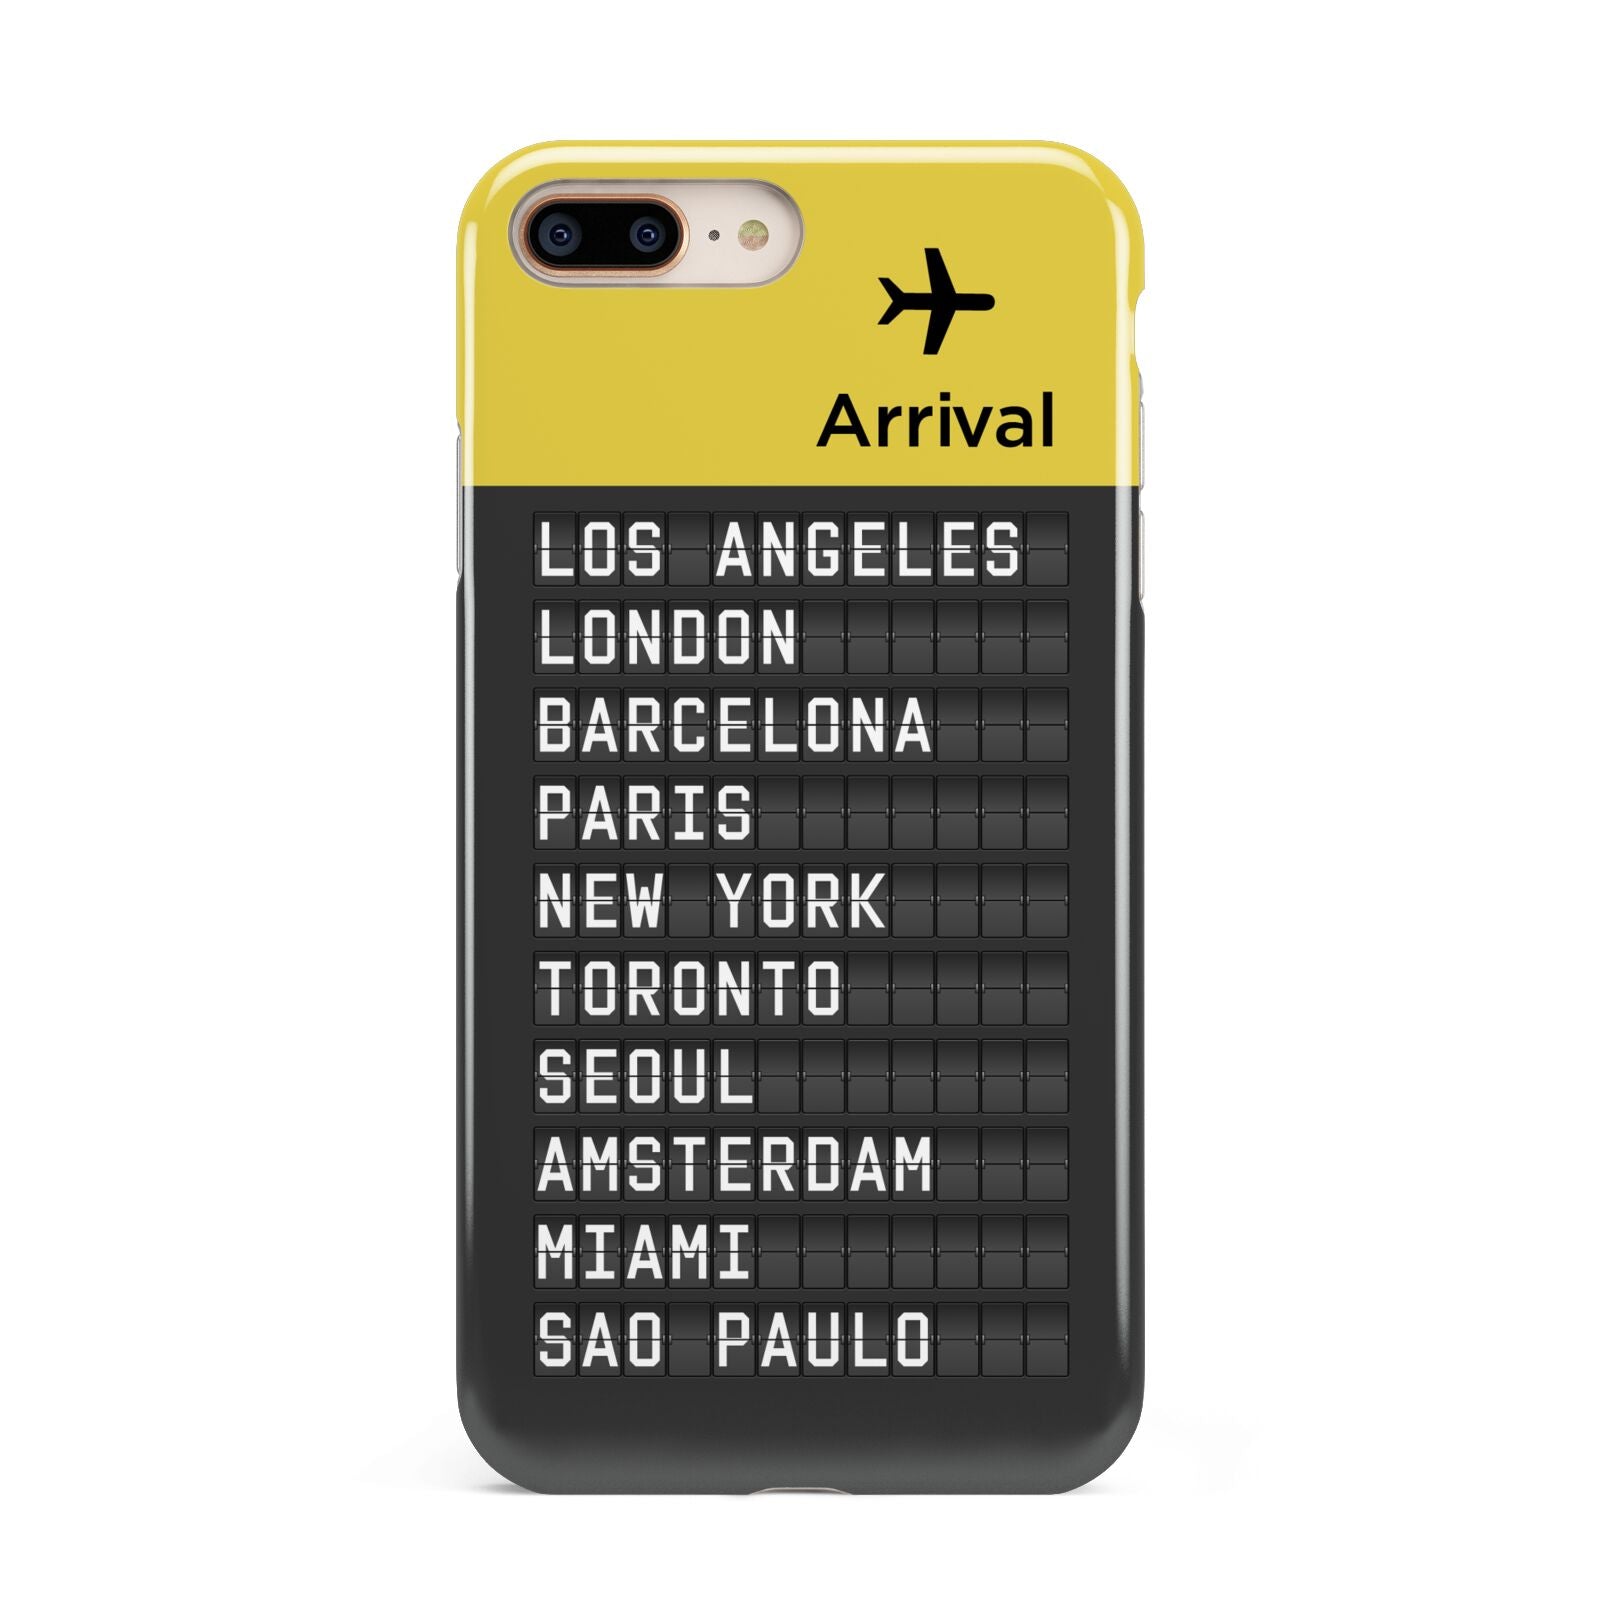 Airport Arrivals Board Apple iPhone 7 8 Plus 3D Tough Case